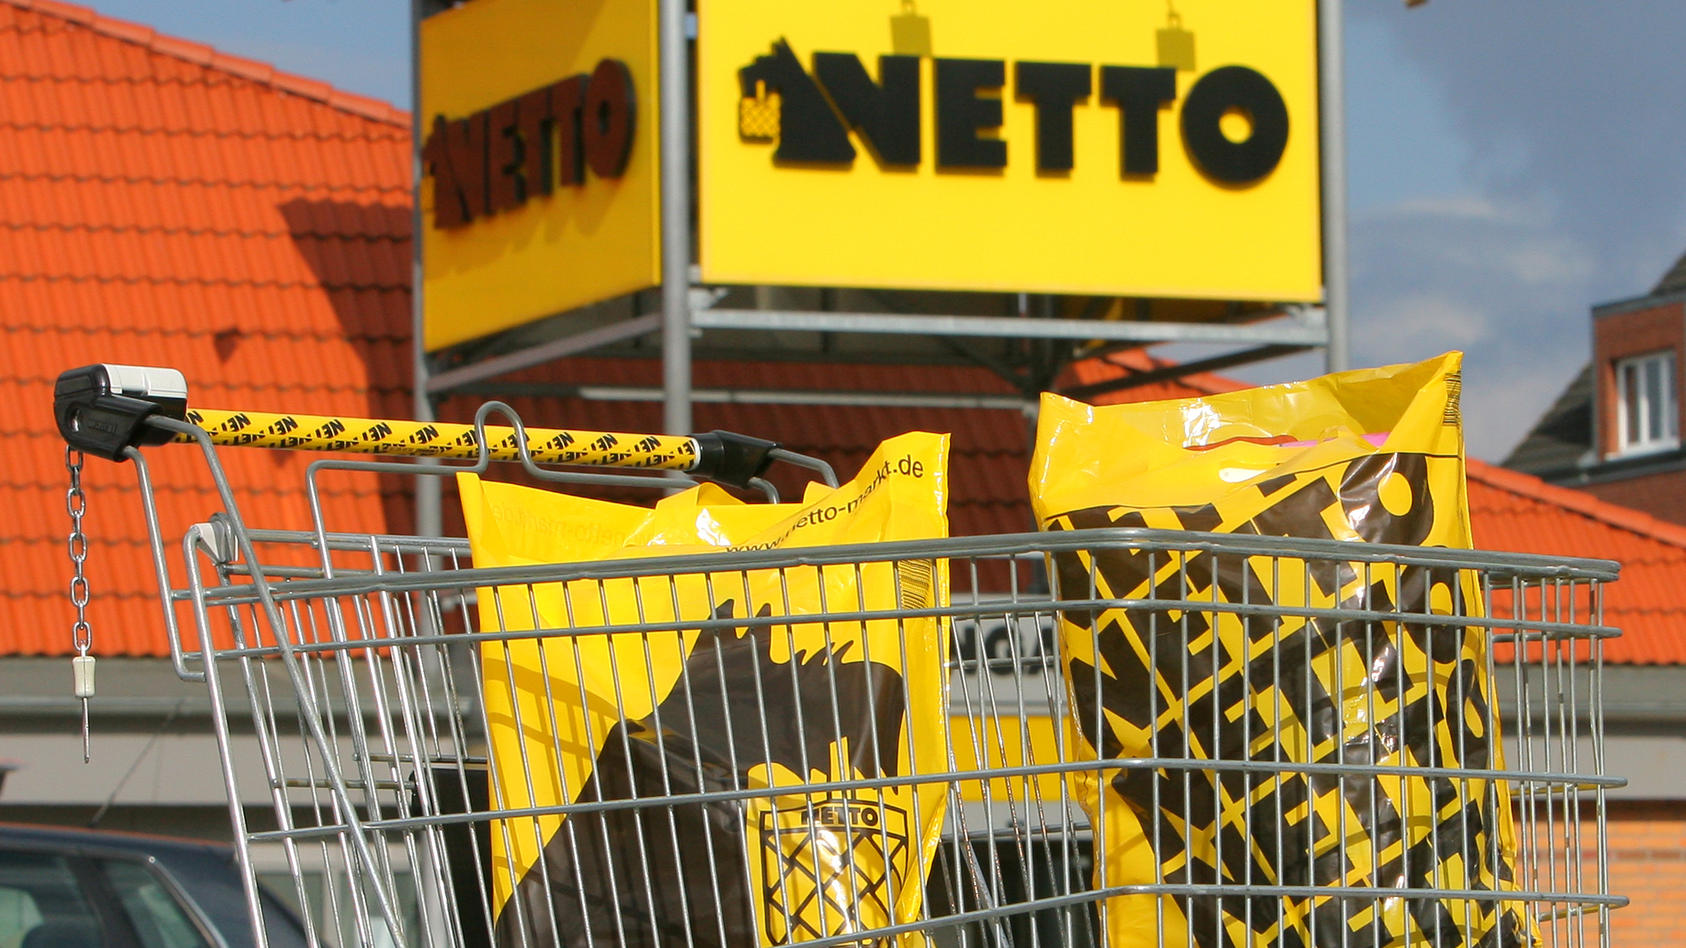 Ein Einkaufswagen mit Einkaufstüten vor einem Verkaufsmarkt der OHG NETTO Supermarkt GmbH & Co. am Dienstag (10.03.2009) in Rostock. Hauptsitz von NETTO Deutschland ist Stavenhagen (Kreis Demmin) in Mecklenburg-Vorpommern. Bundesweit zählt das Untern